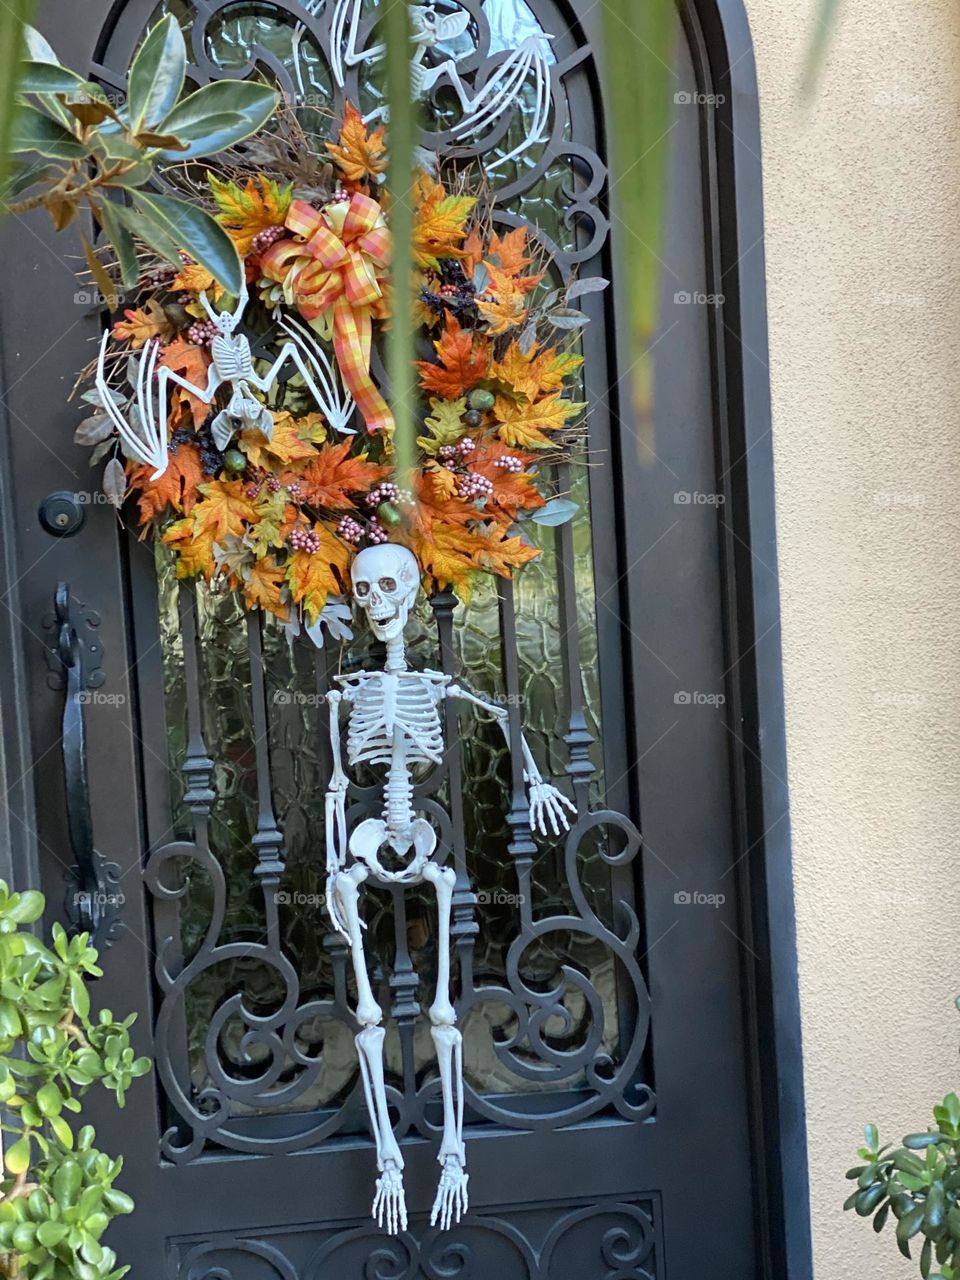 Spooky Halloween Front Door Decorations!